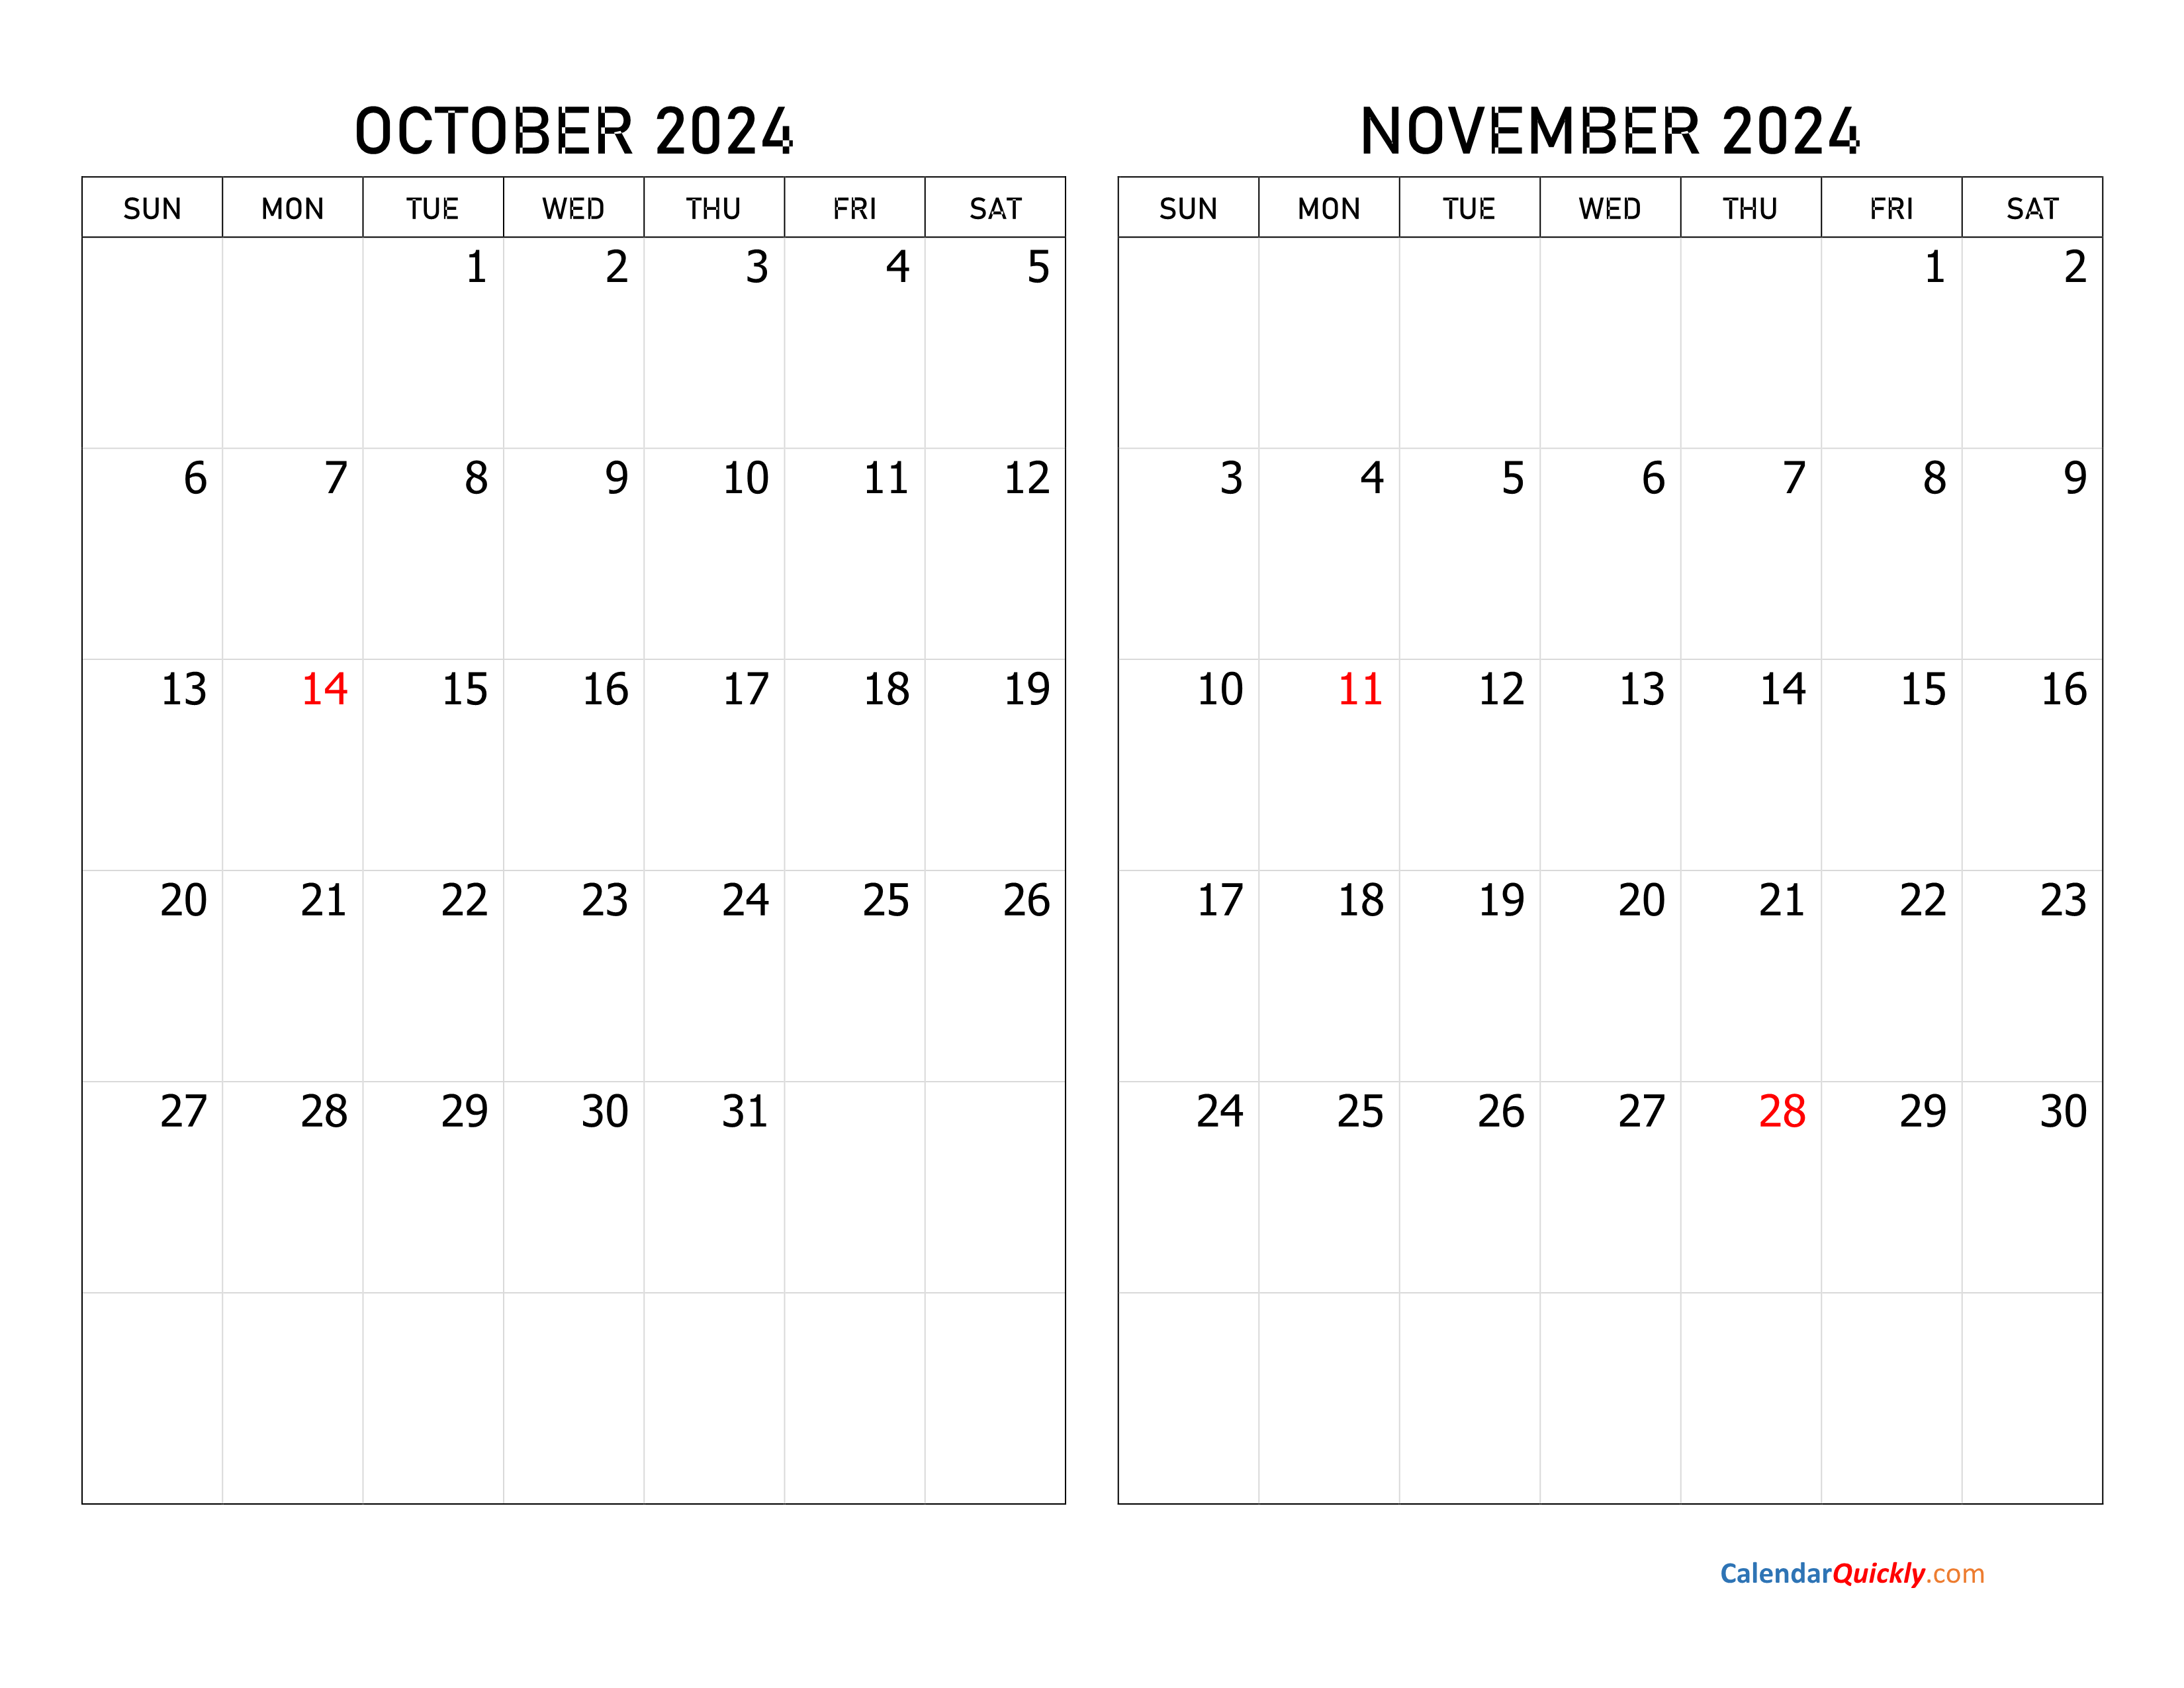 november-calendar-2024-printable-calendar-quickly-vrogue